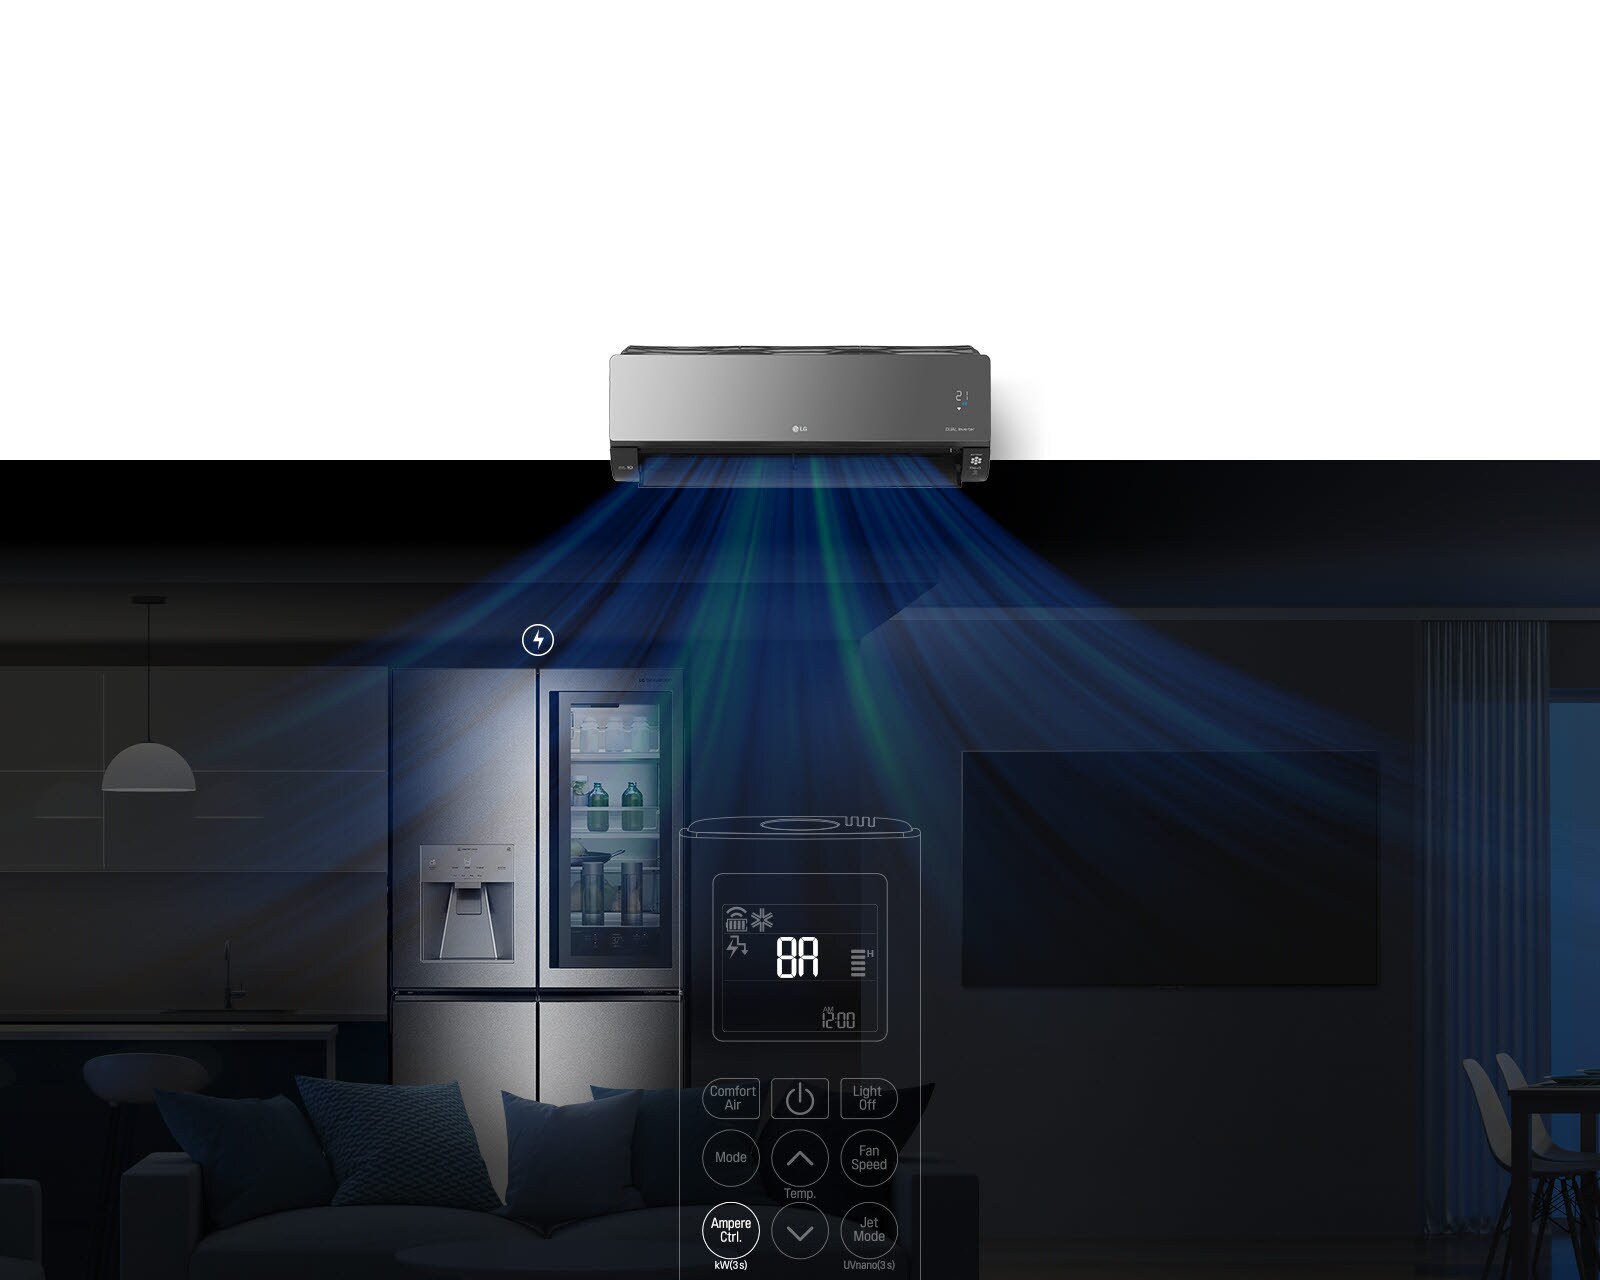 صورة مظلمة لفضاء غرفة معيشة / مطبخ في الخلفية. الثلاجة مضاءة وتحتوي على أيقونة صاعقة البرق فوقها. ويظهر جهاز التحكم عن بعد على الشاشة. الأزرار بارزة كما لو أن شخصا ما قد دفعها ويتم تغيير الإعدادات. يأتي الضوء الأزرق من مكيف الهواء في صورة هواء. التلفزيون يعمل مع ظهور أيقونة صاعقة البرق فوقه. موجة أخرى من الضوء الأزرق تأتي من مكيف الهواء في صورة هواء. الضوء في المطبخ يضيء أيقونة صاعقة البرق تحته. 